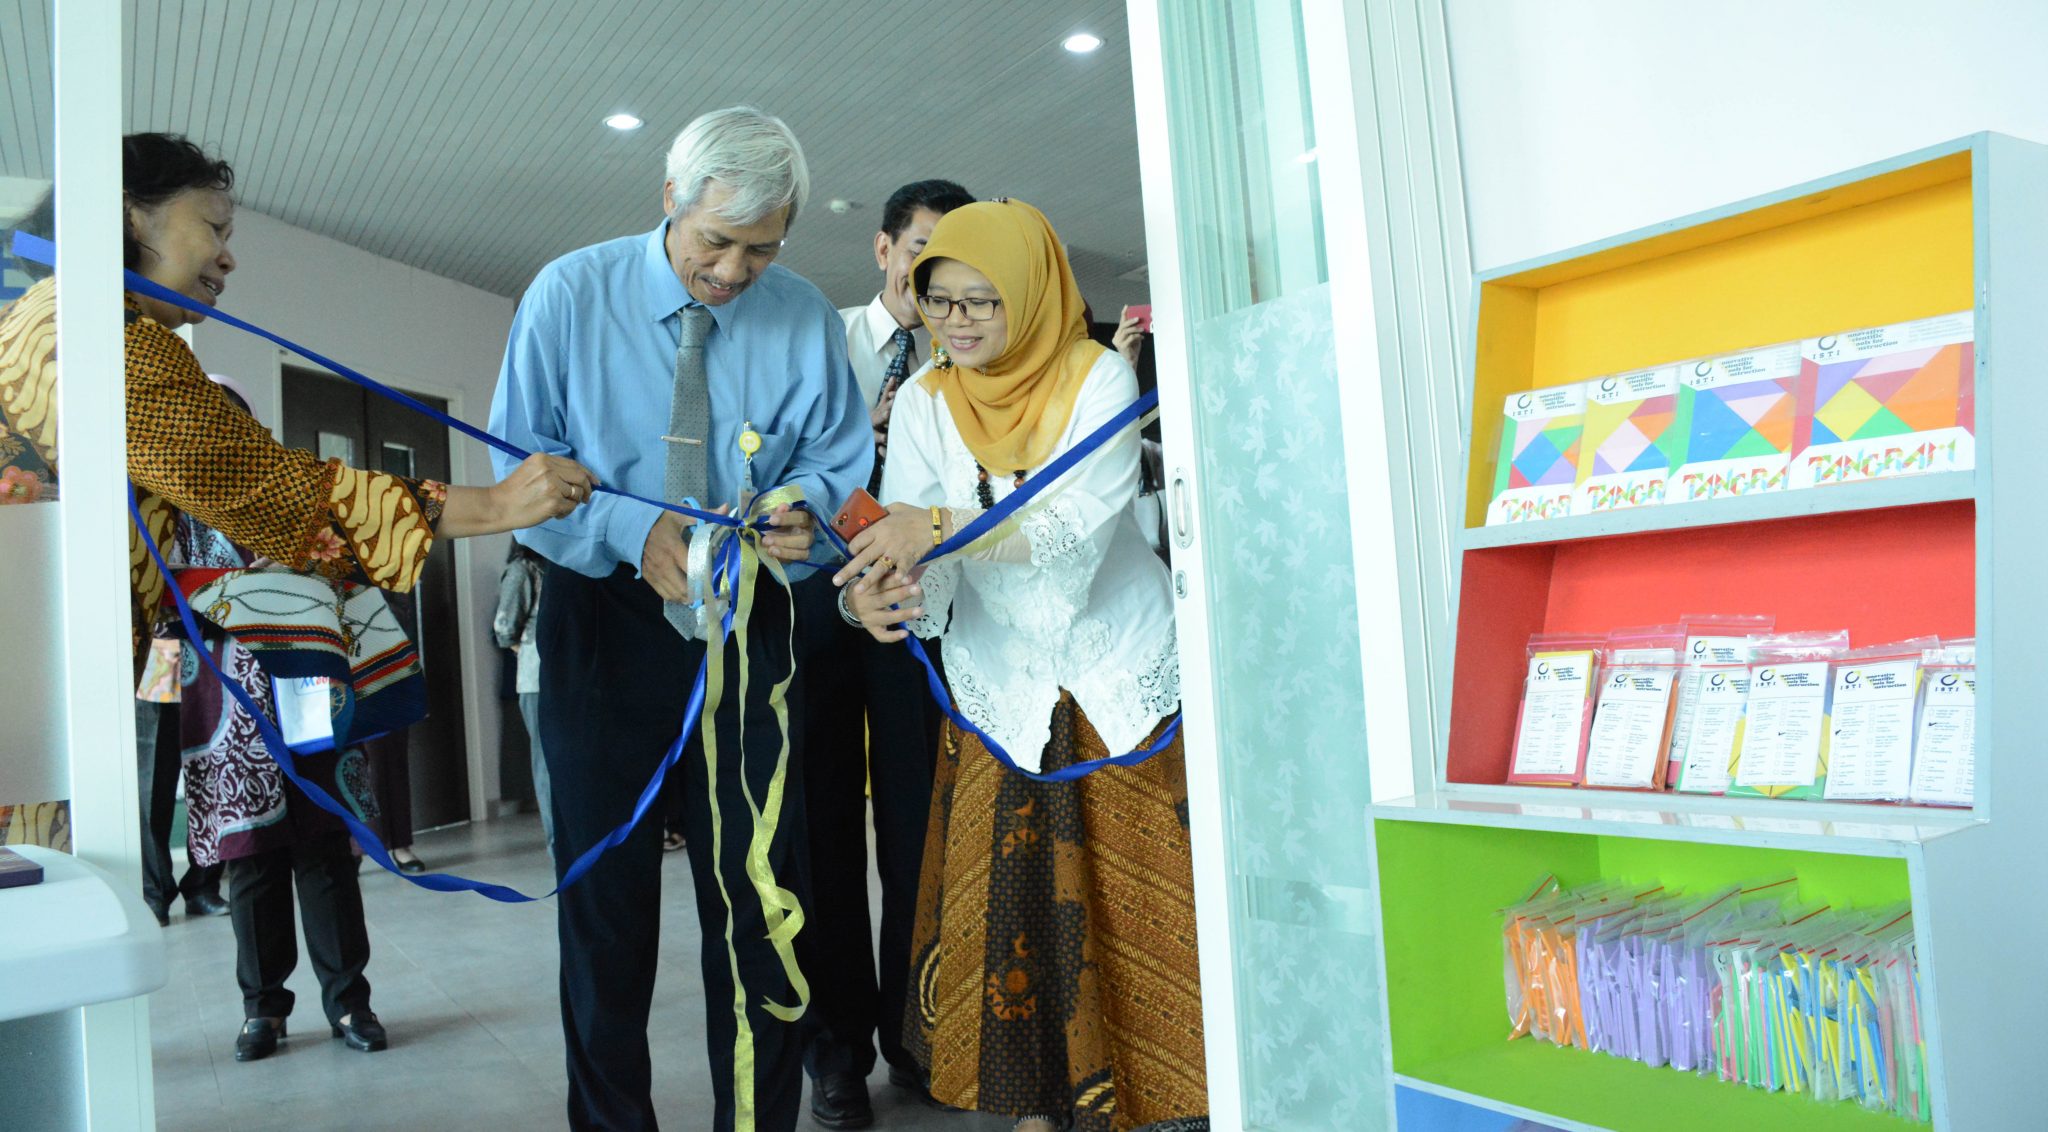 Toko yang terletak di lantai 3 Gedung Kewirausahaan UNNES ini resmi dibuka oleh Dekan Fakultas Matematika dan Ilmu Pen ahuan Alam FMIPA Prof Dr Sudarmin